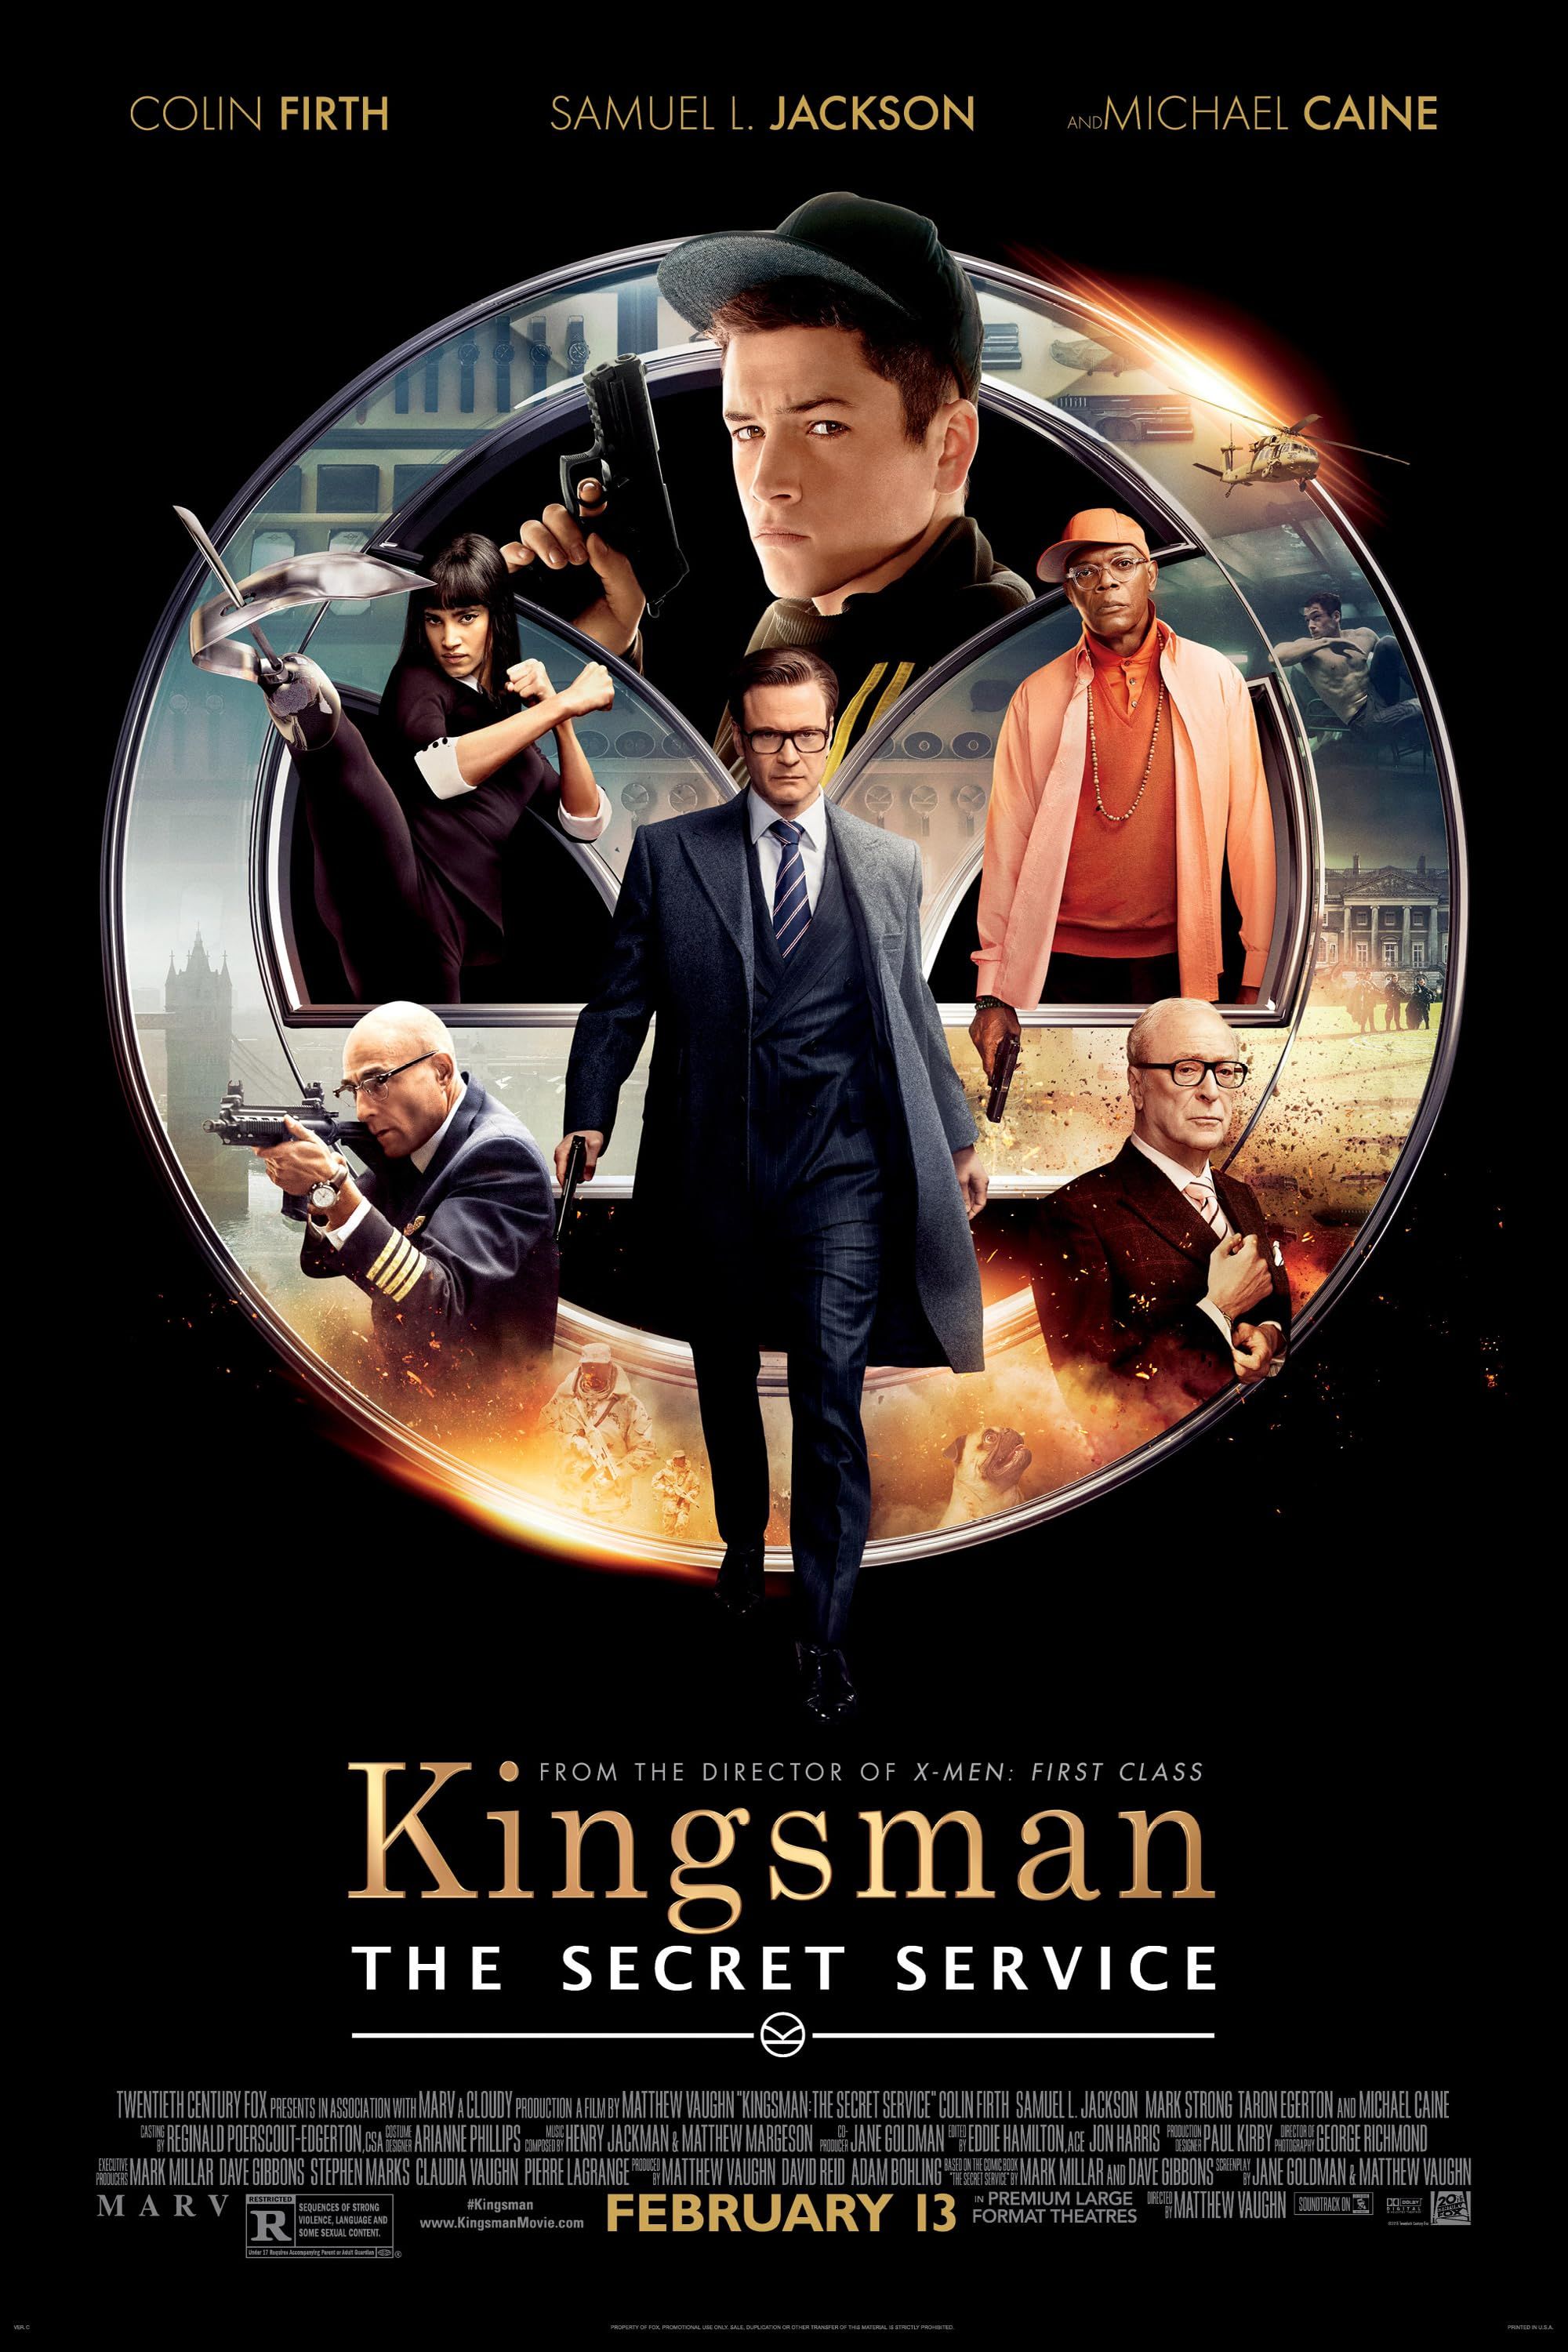 Kingsman The Secret Service (2014) Hindi Dubbed ORG HDRip Full Movie 720p 480p